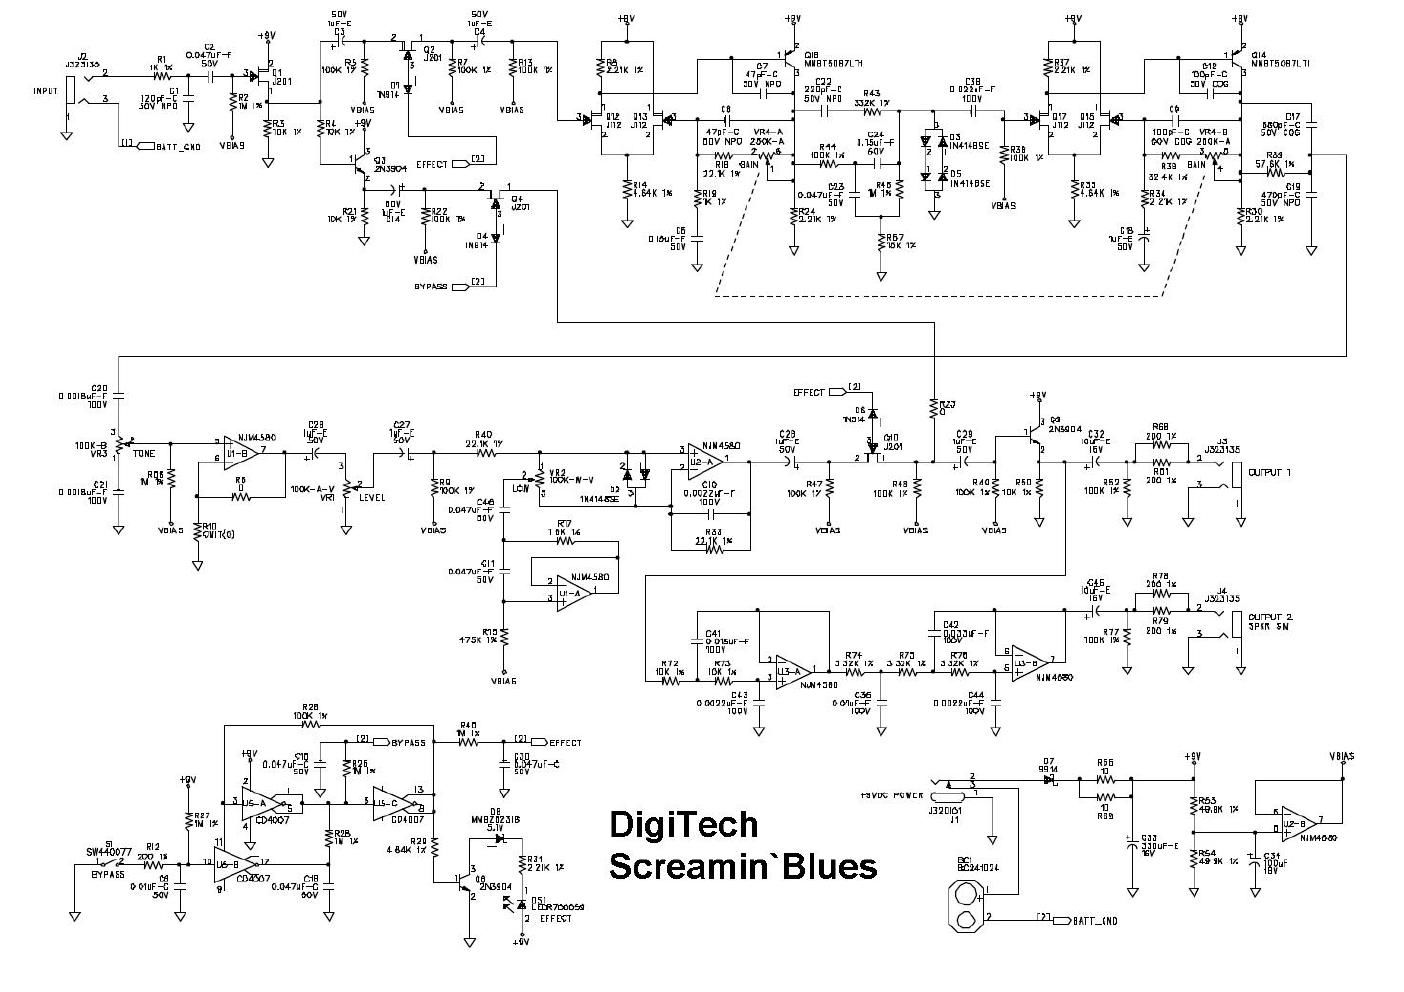 digitech screamin blues schematic